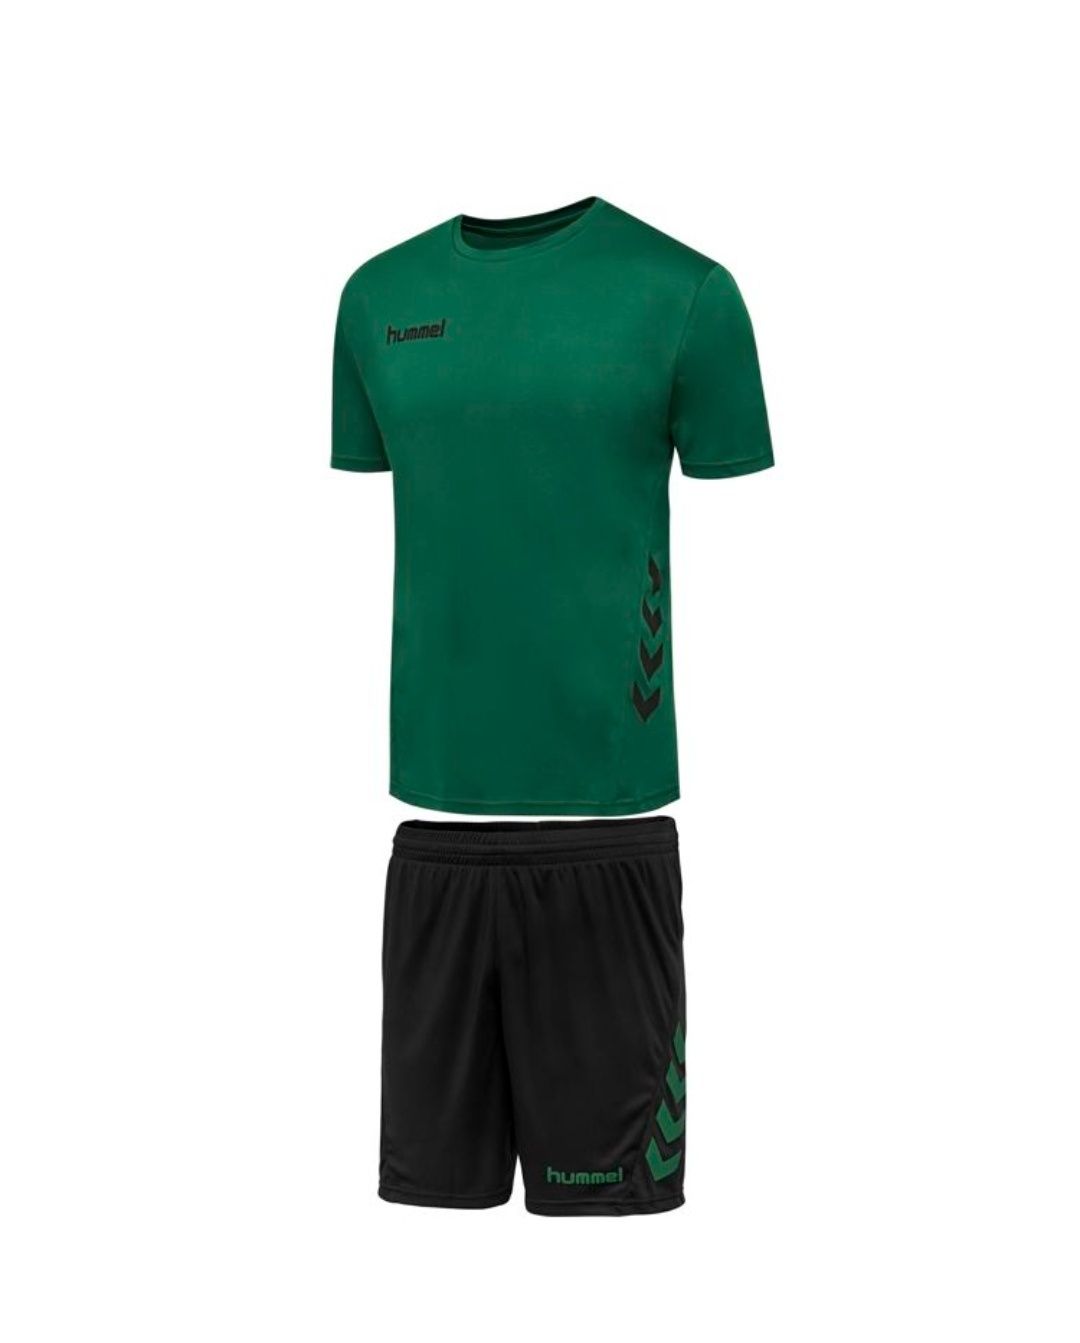 Hummel strój 164 set spodenki koszulka piłka nożna zielony